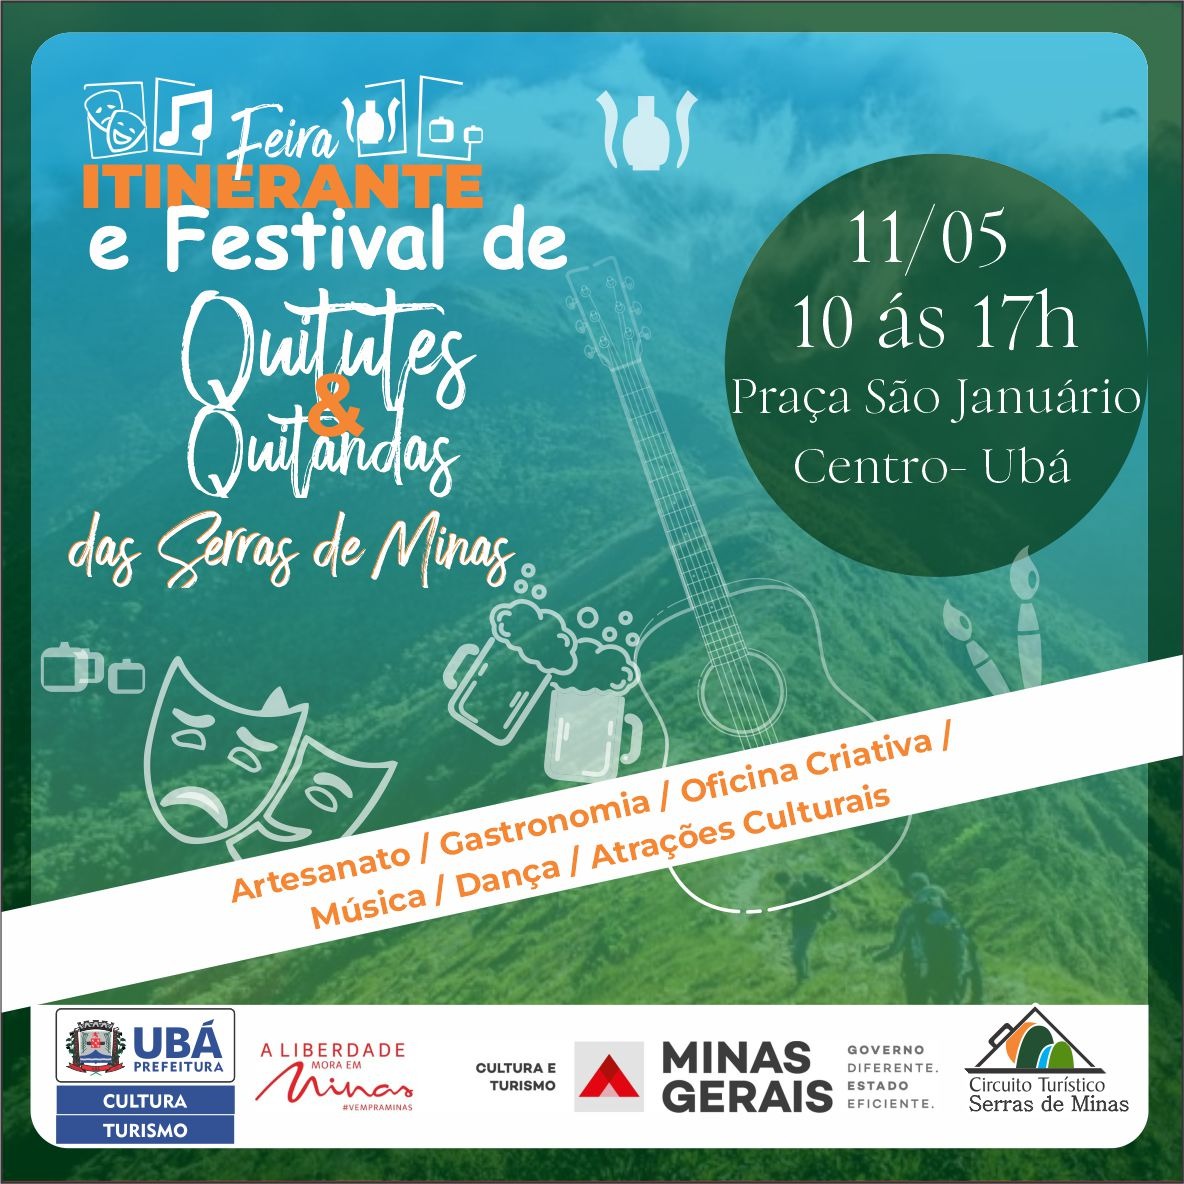 Feira Itinerante e Festival de Quitutes e Quitanda